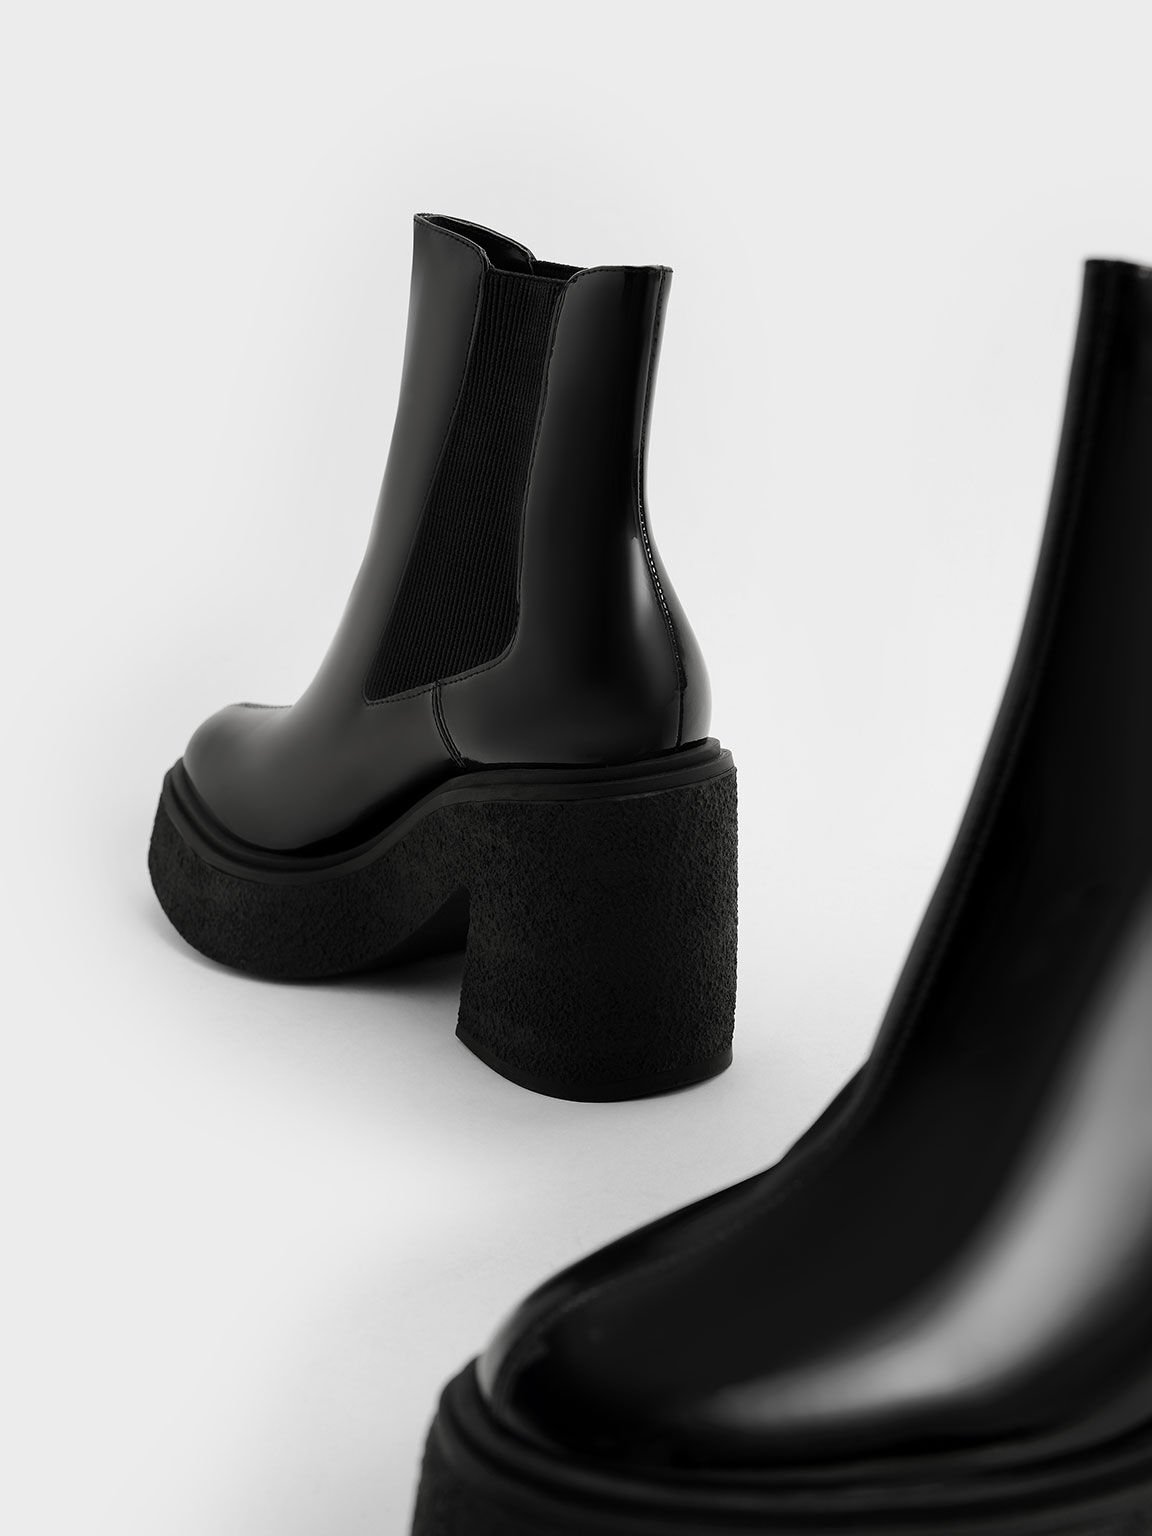 Odette Patent Leather Chelsea Platform Boots, Black, hi-res